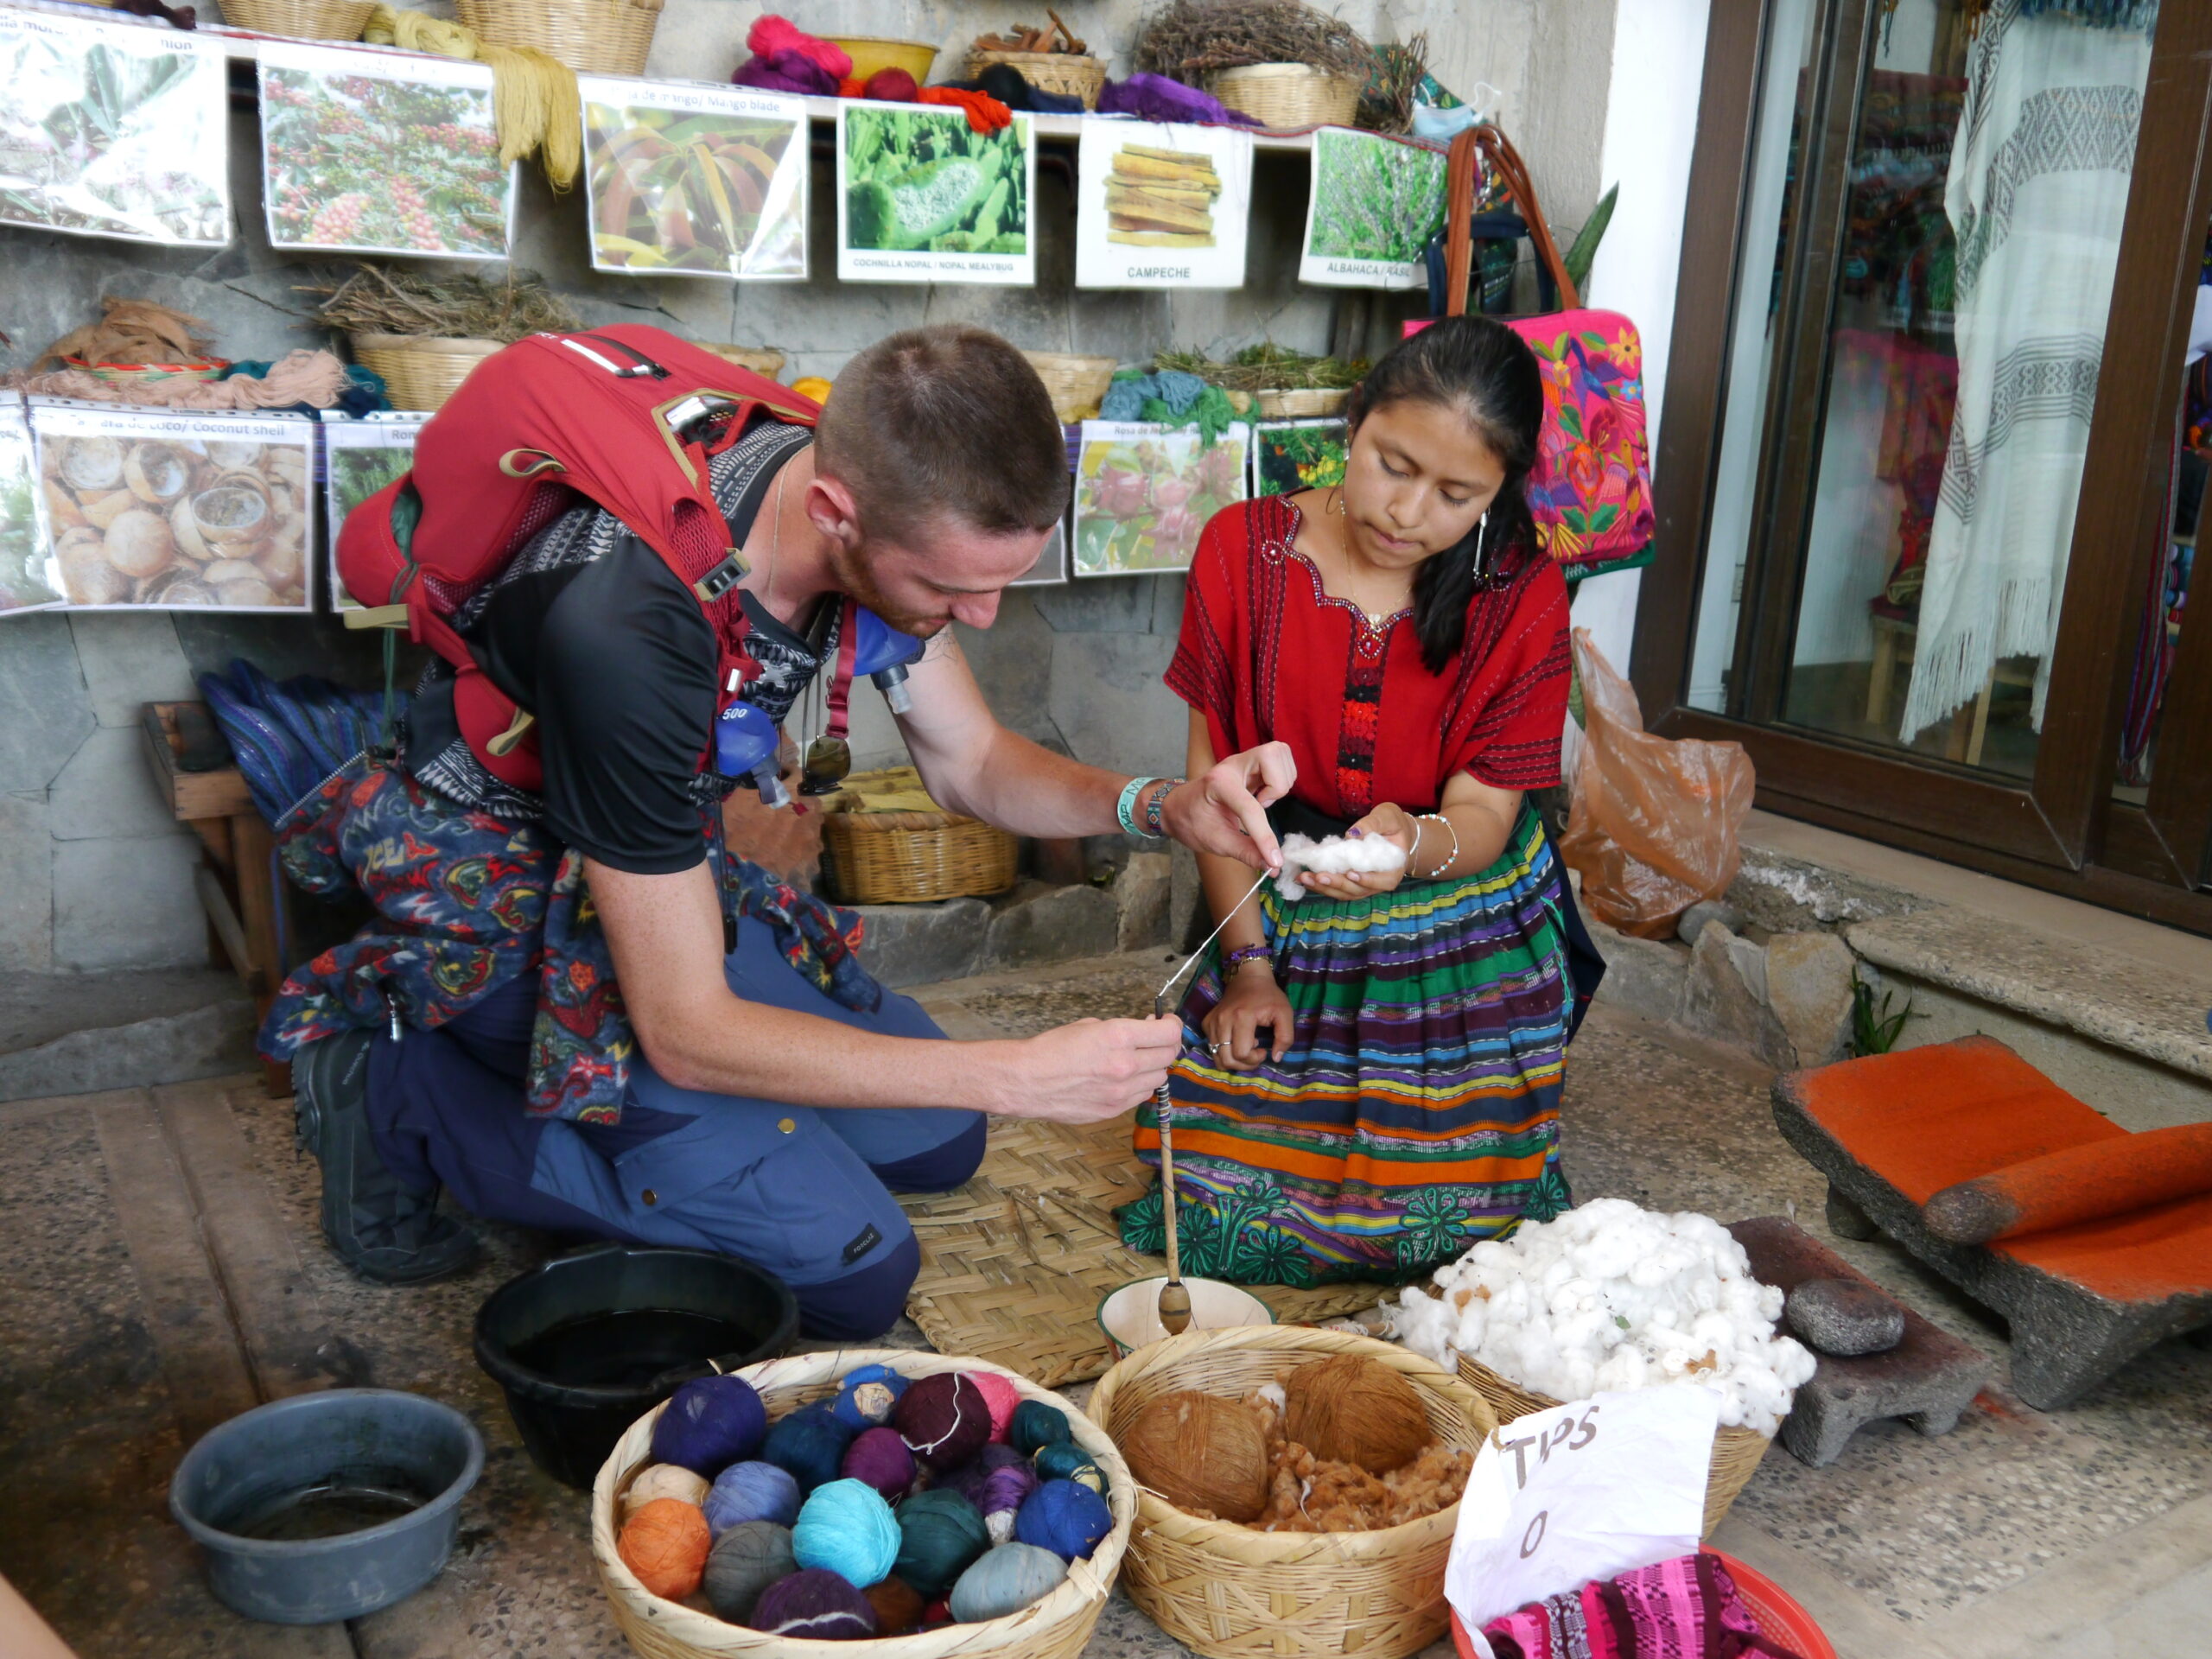 Eine Frau in traditioneller Maya-Kleidung und ein junger Mann knien auf dem Boden, vor ihnen Körbe mit bunten Wollknäueln und eine Spindel. Sie zeigt ihm, wie er den Baumwollfaden spinnen muss.